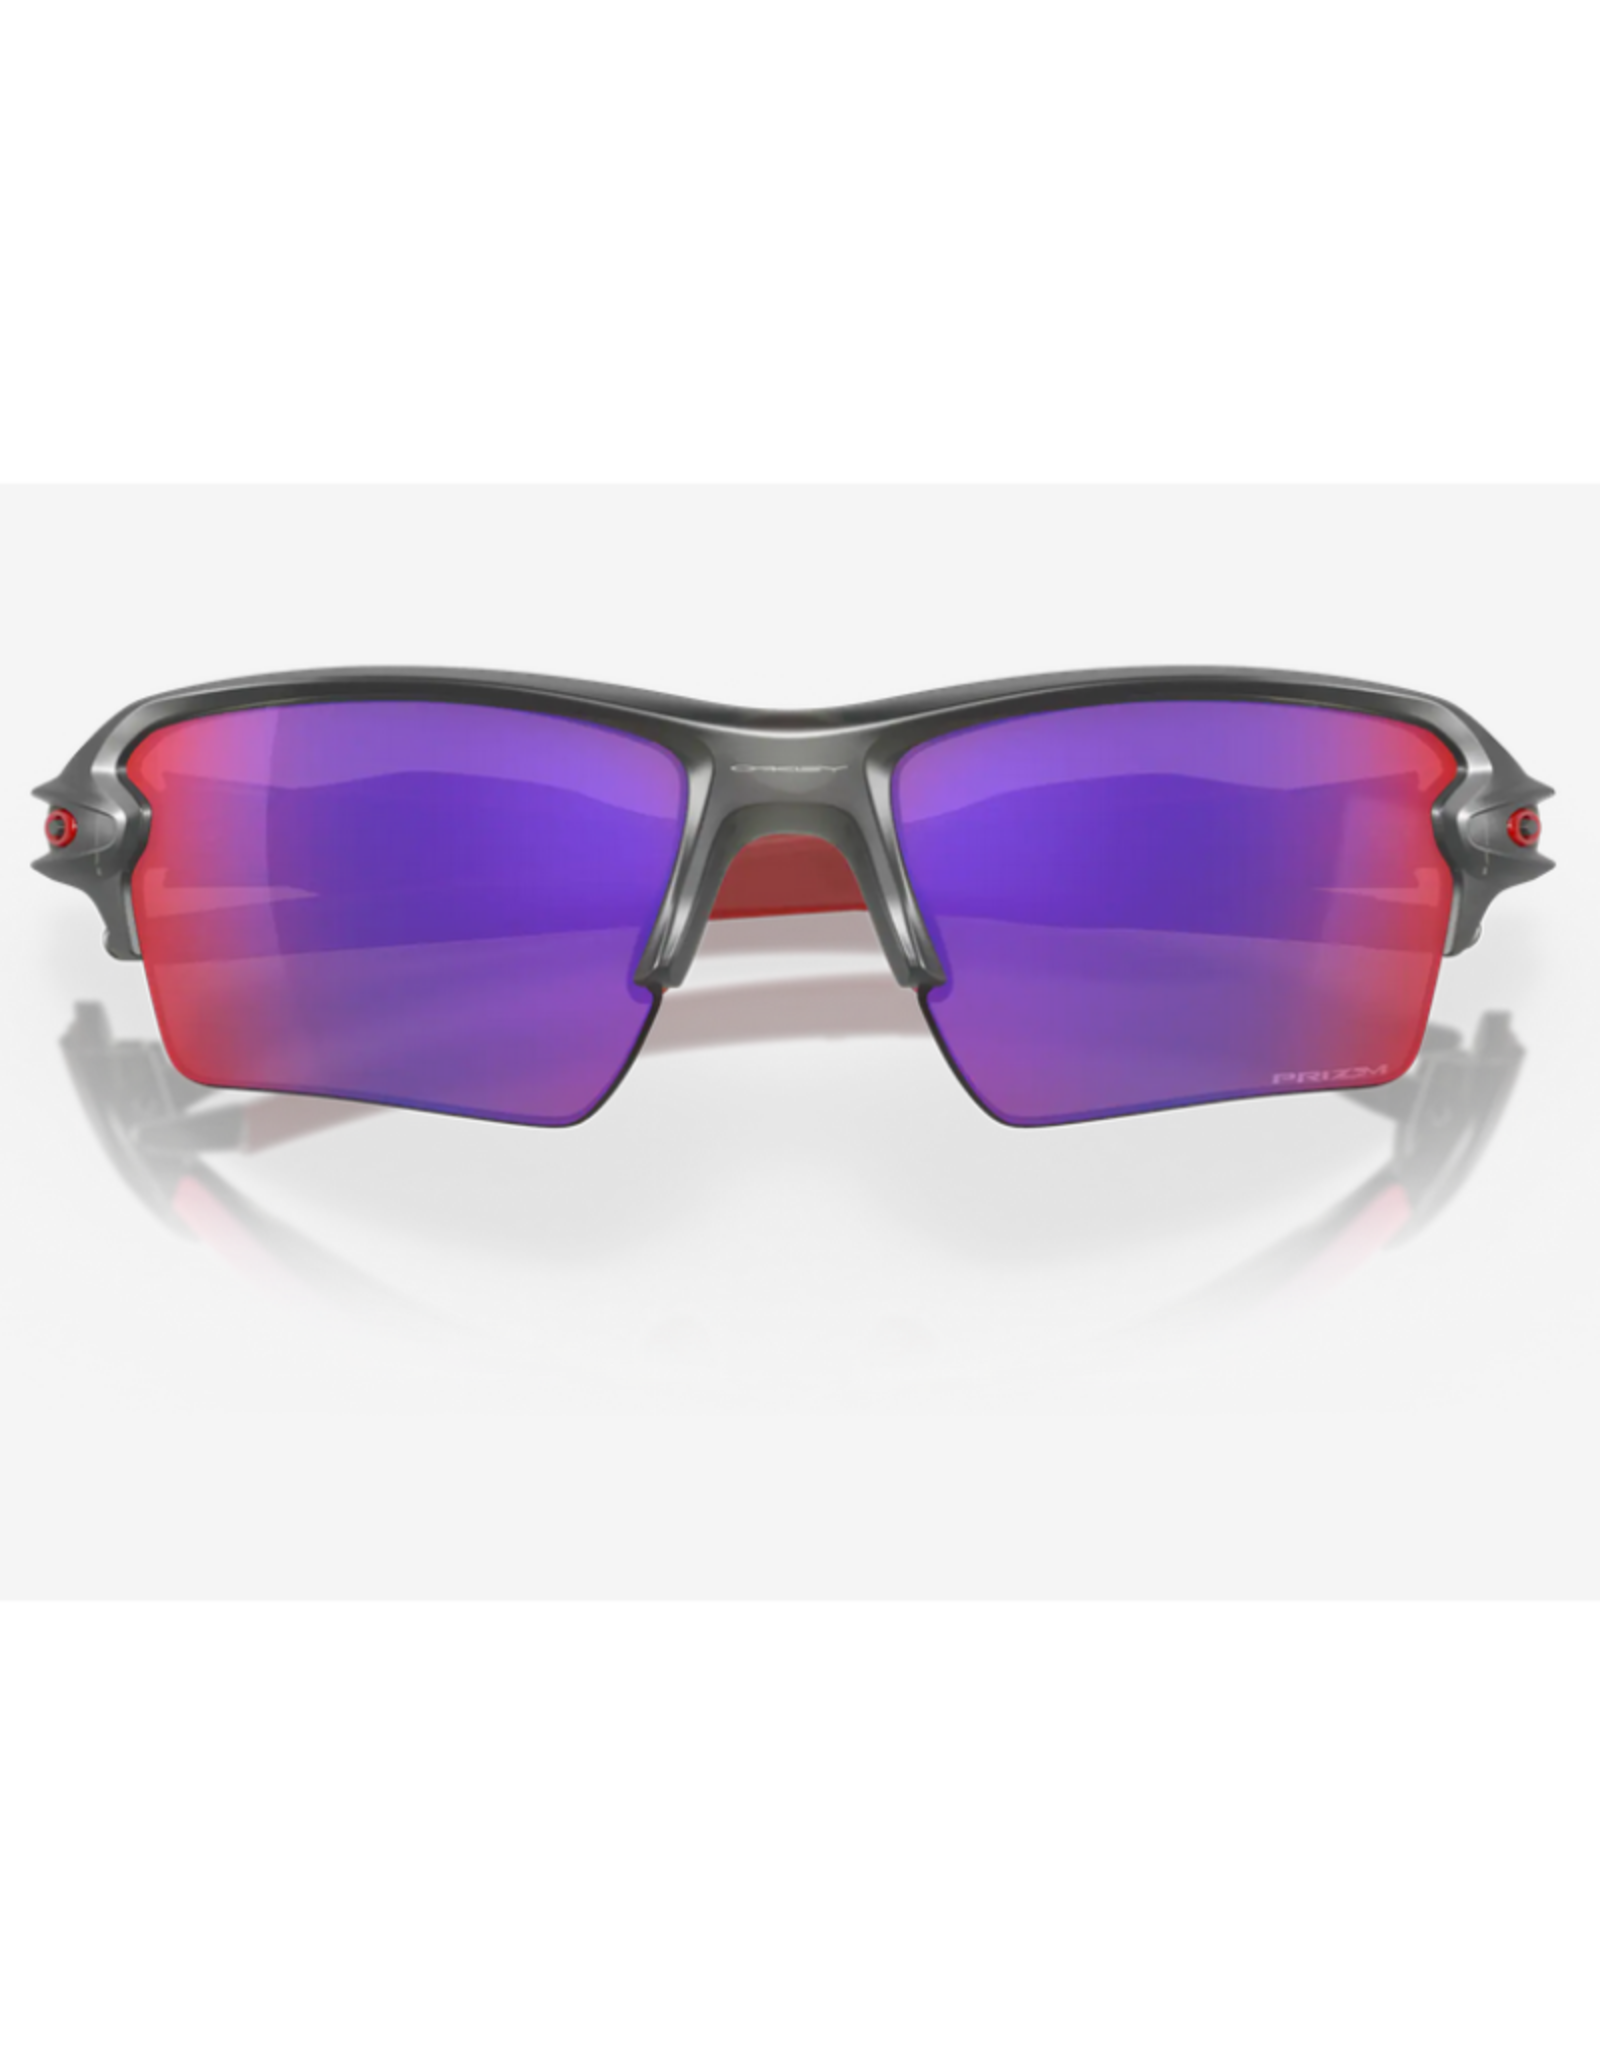 Oakley Flak 2.0 XL Prizm Road Lenses Matte Grey Smoke Frame Sunglasses